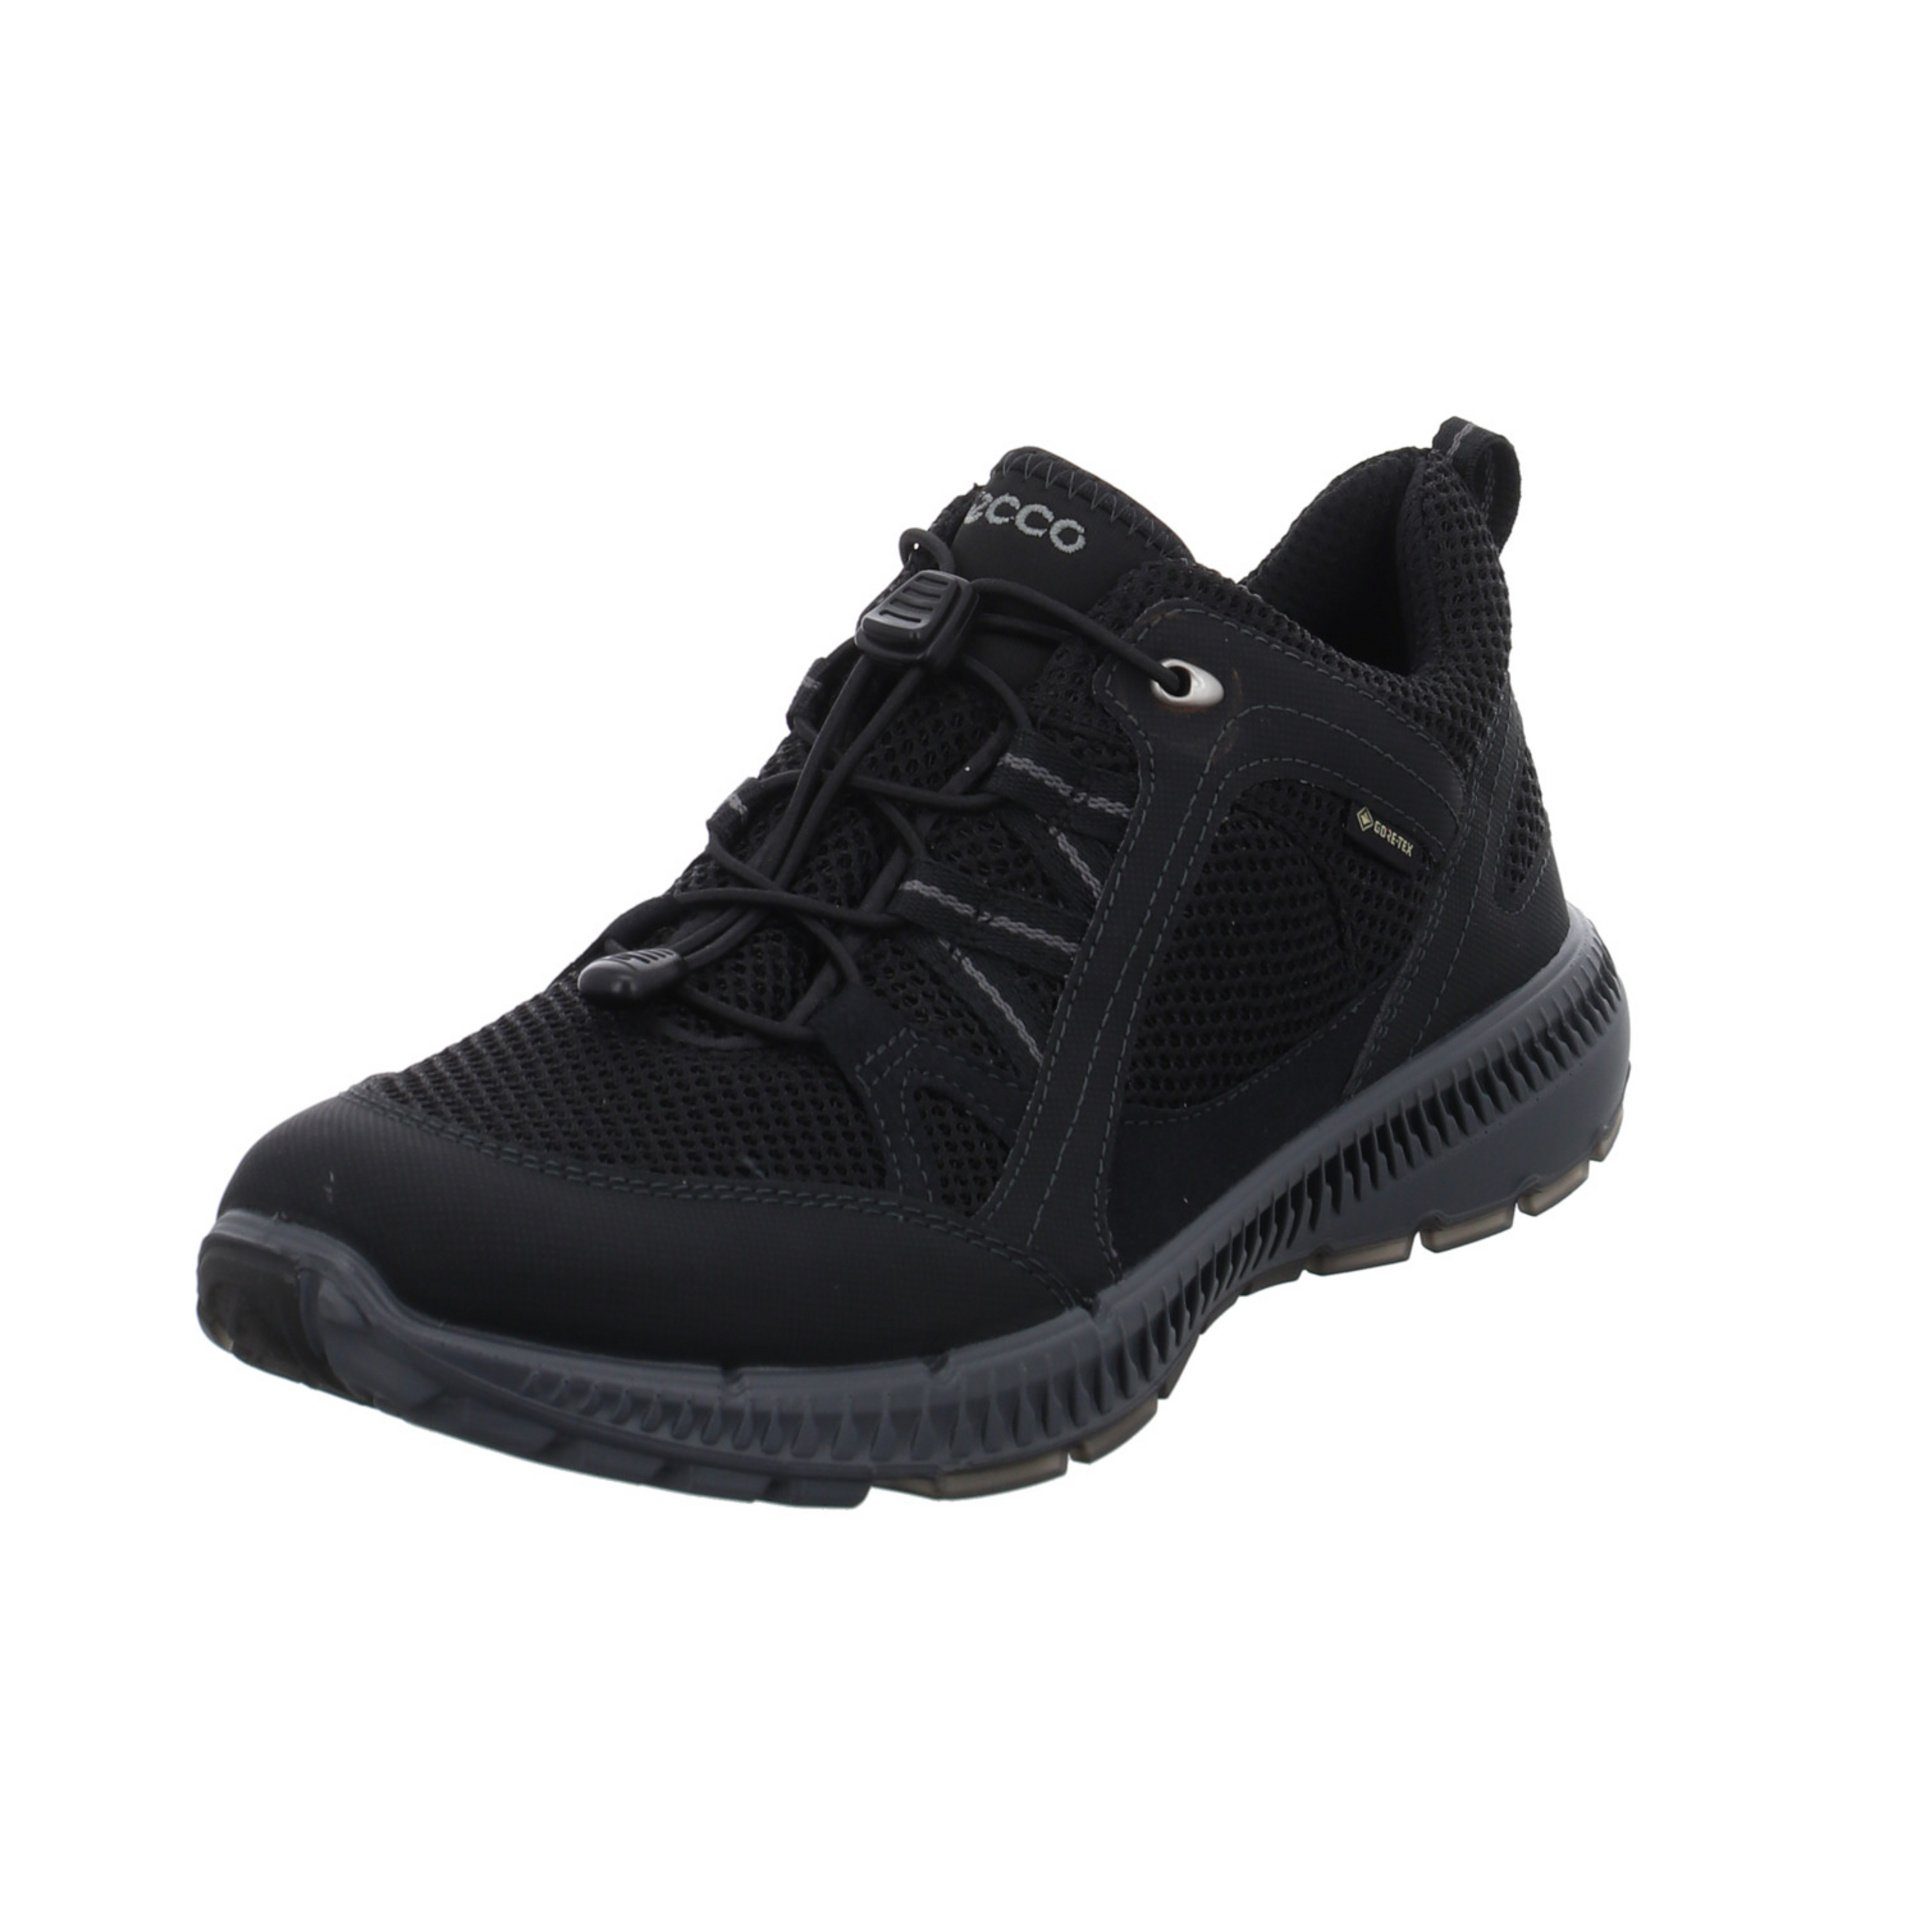 Outdoor black Terracruise Outdoorschuh GTX Synthetikkombination Outdoorschuh Damen Ecco Schuhe